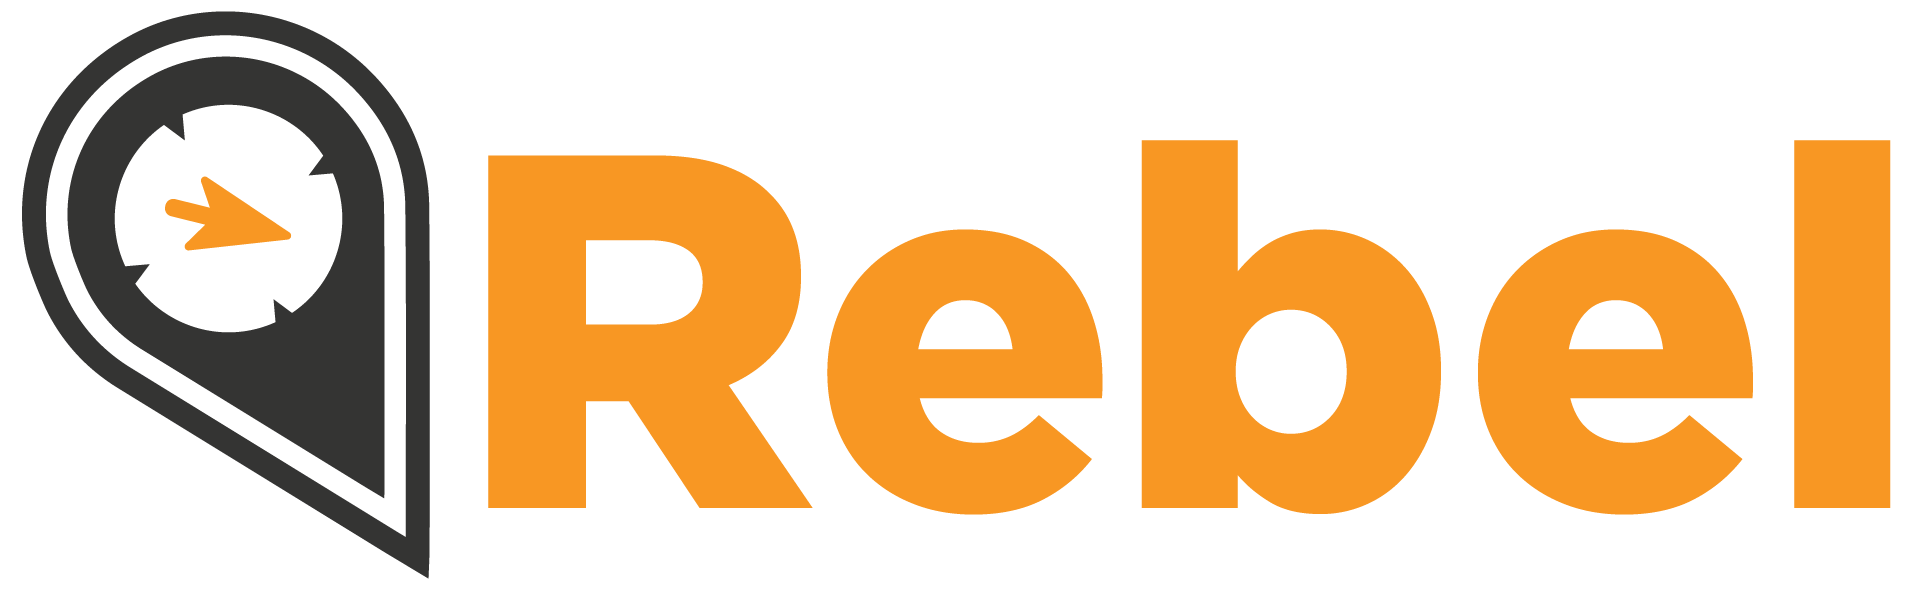 Rebel_logo_01